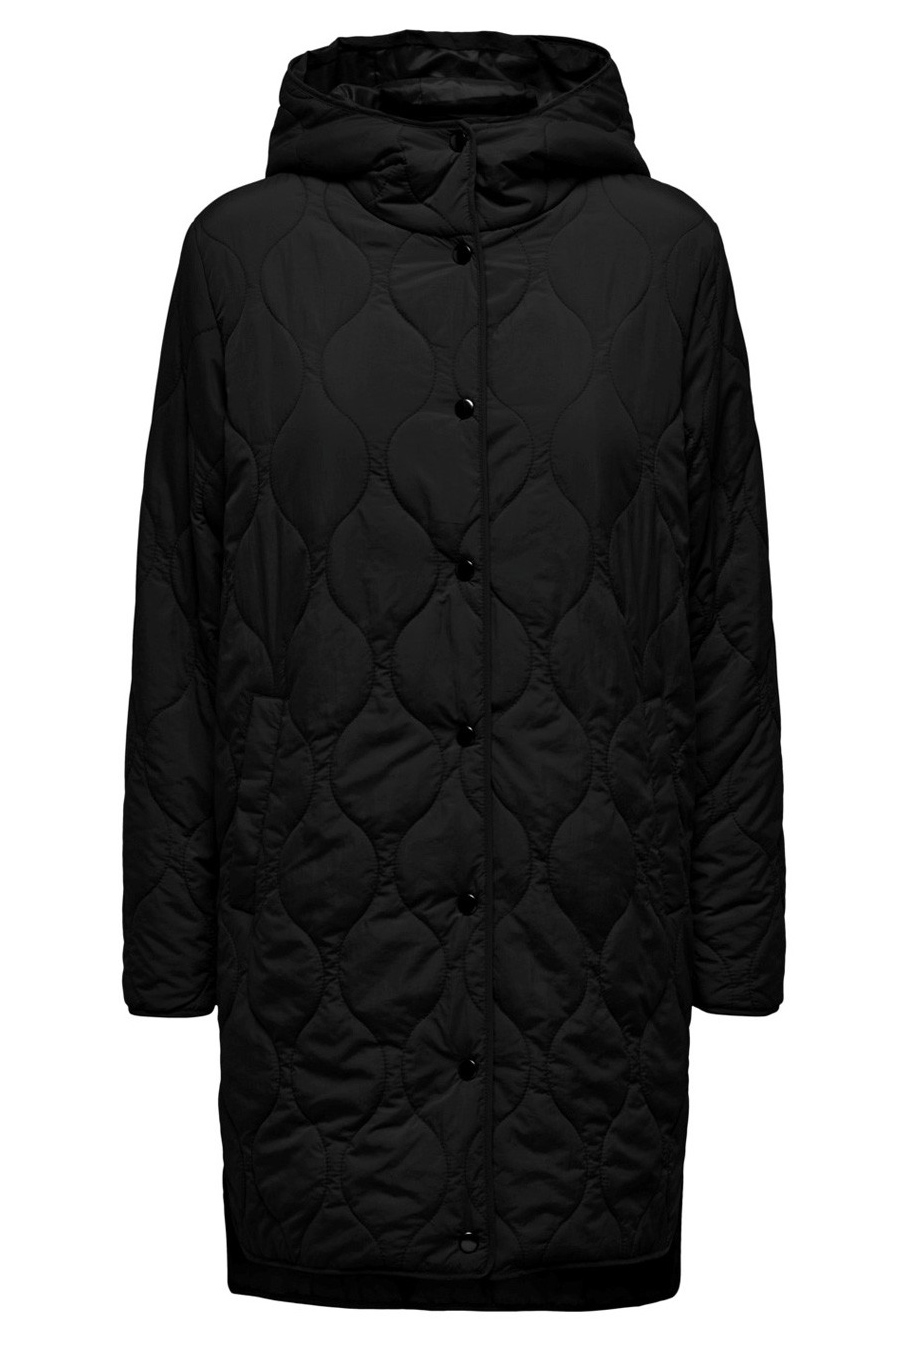 Jacket JACQUELINE DE YONG 15302203-Black